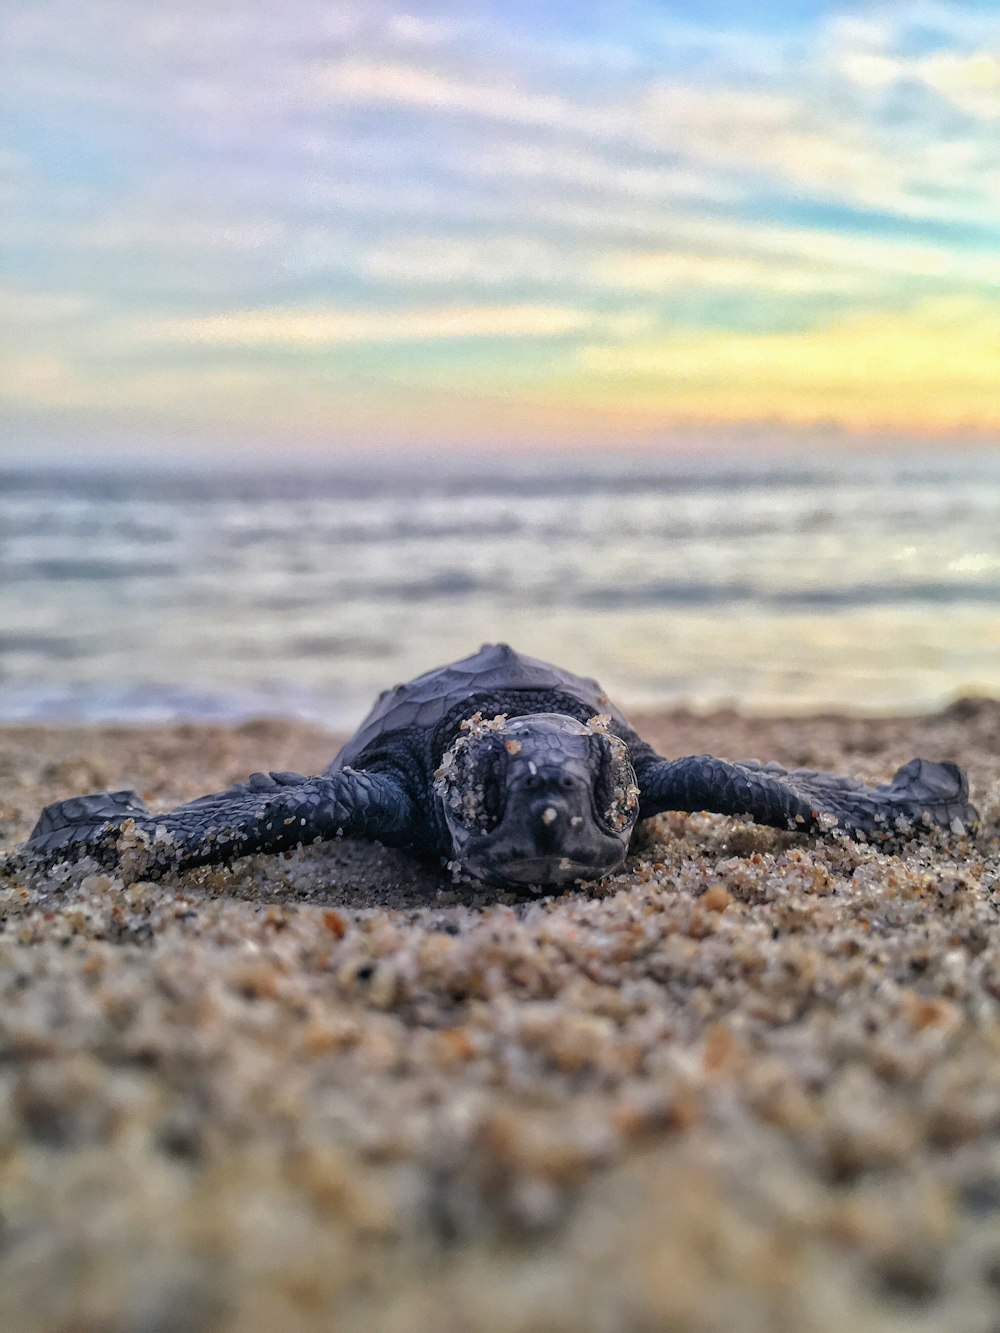 black turtle on seashore